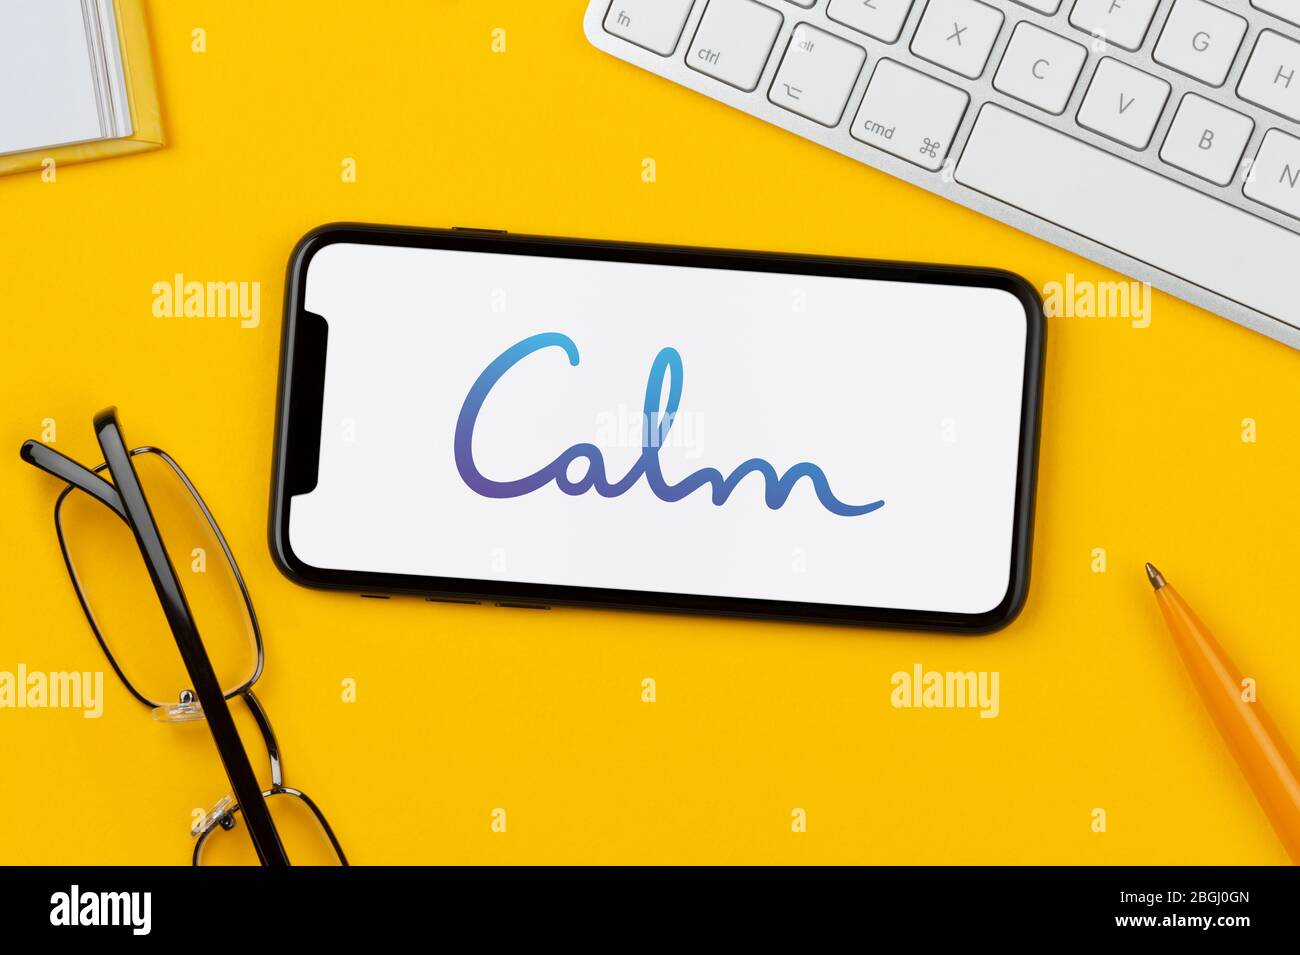 Un smartphone affichant le logo de l'application Calm repose sur un fond jaune avec un clavier, des lunettes, un stylo et un livre (usage éditorial uniquement). Banque D'Images